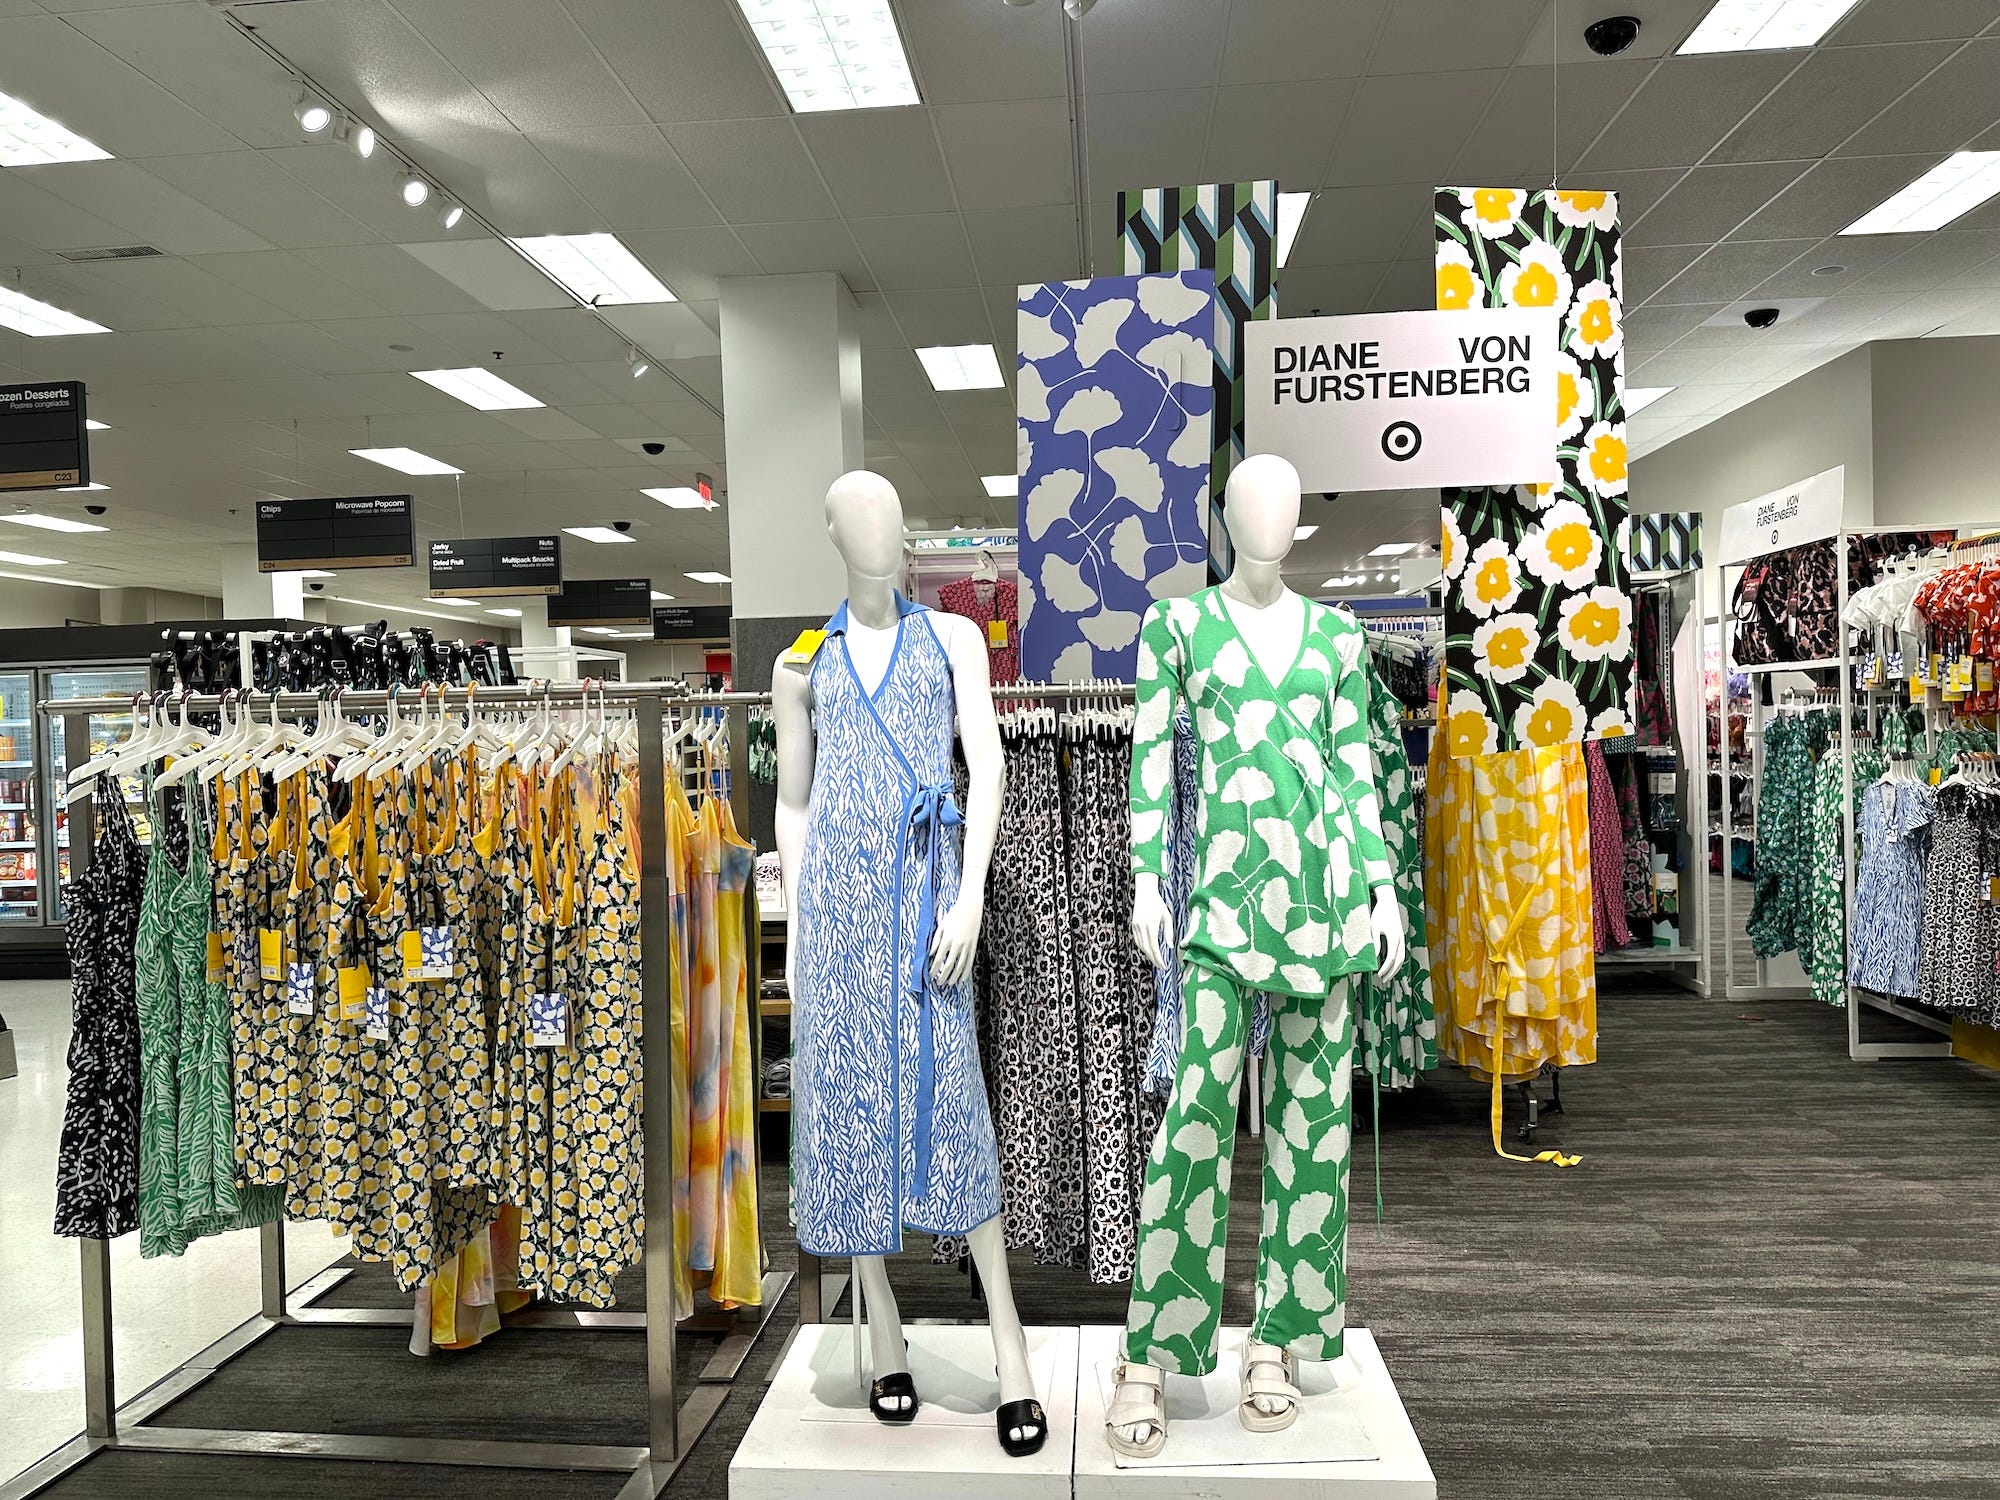 Eine Kleiderausstellung in Target mit einem „Diane Von Furstenberg“-Schild darüber.